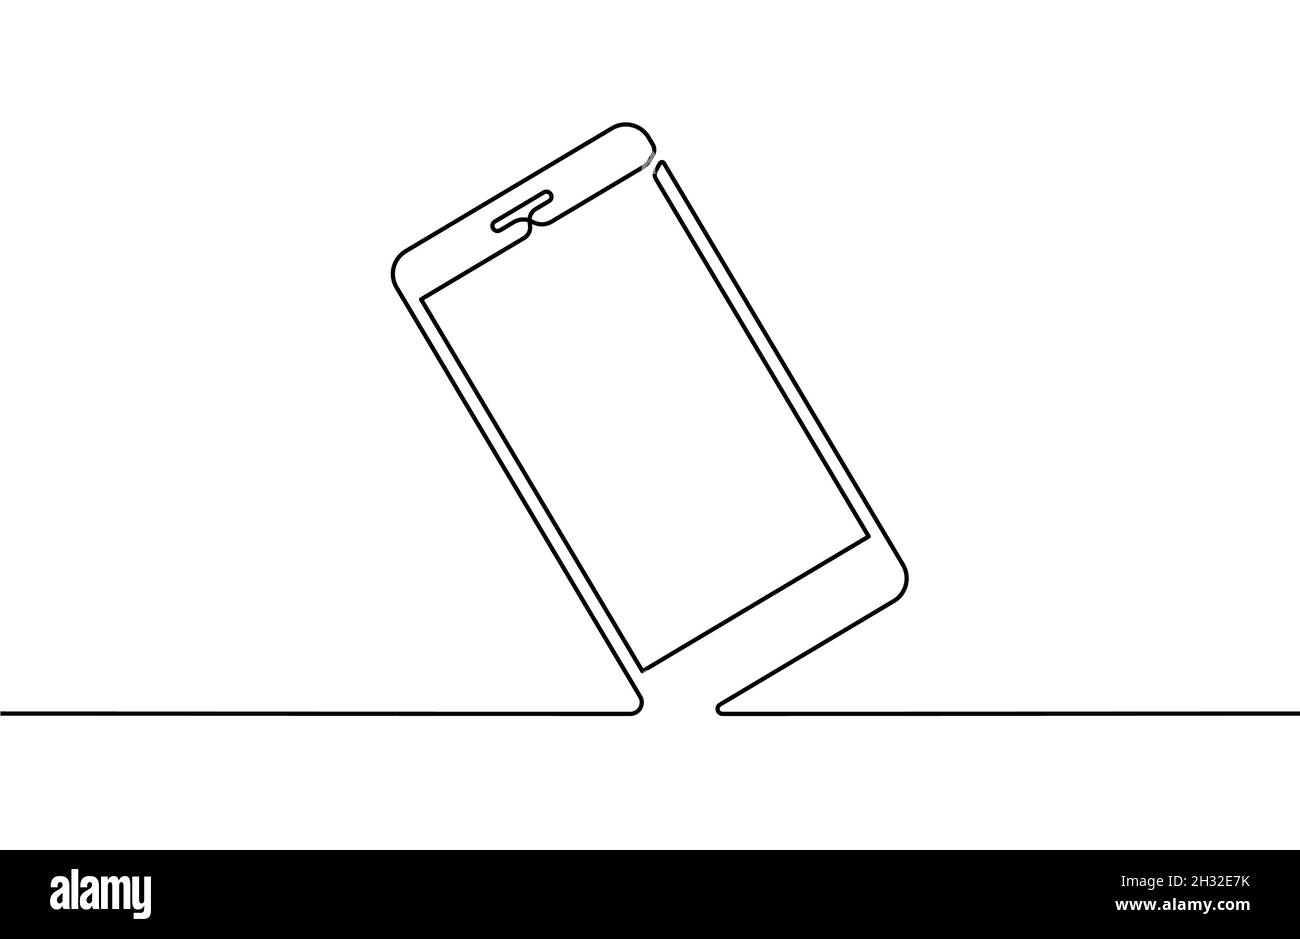 Hintergrund der Telefonleitung. Hintergrund für einzeilige Zeichnung. Kontinuierliche Linienzeichnung des Smartphones. Vektorgrafik. Stock Vektor